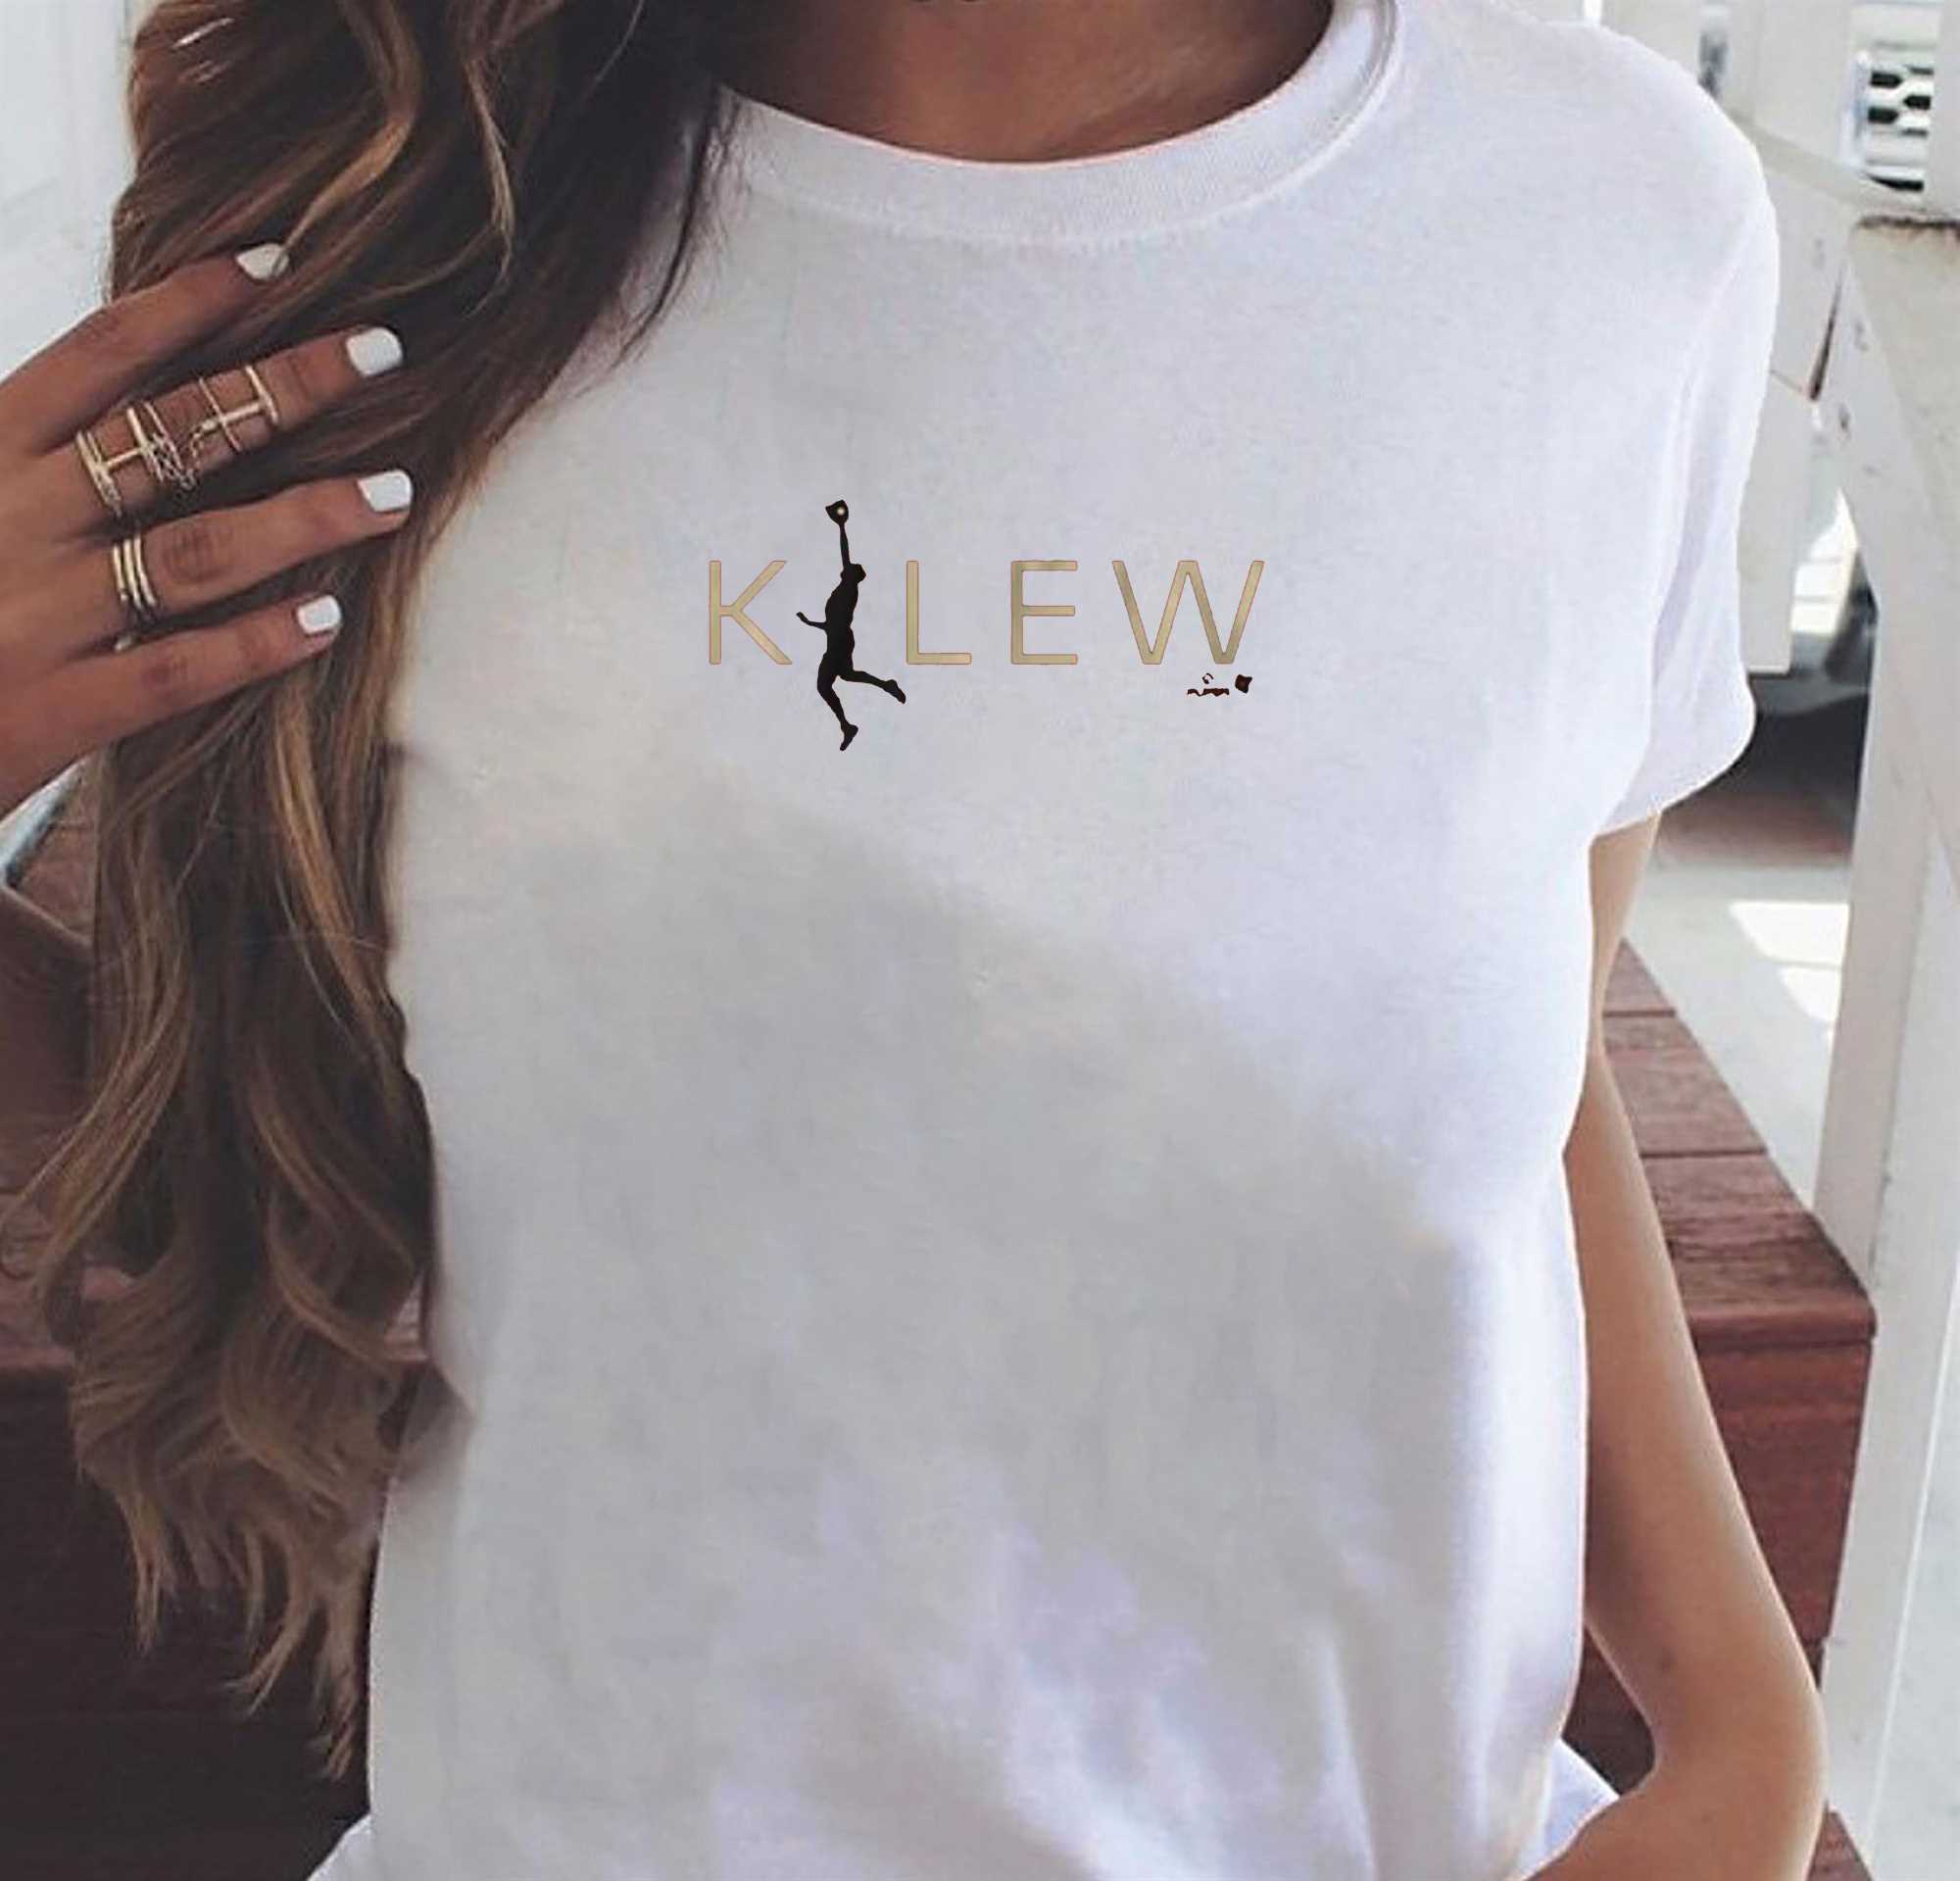 Kyle Lewis Air K-lew T-shirt